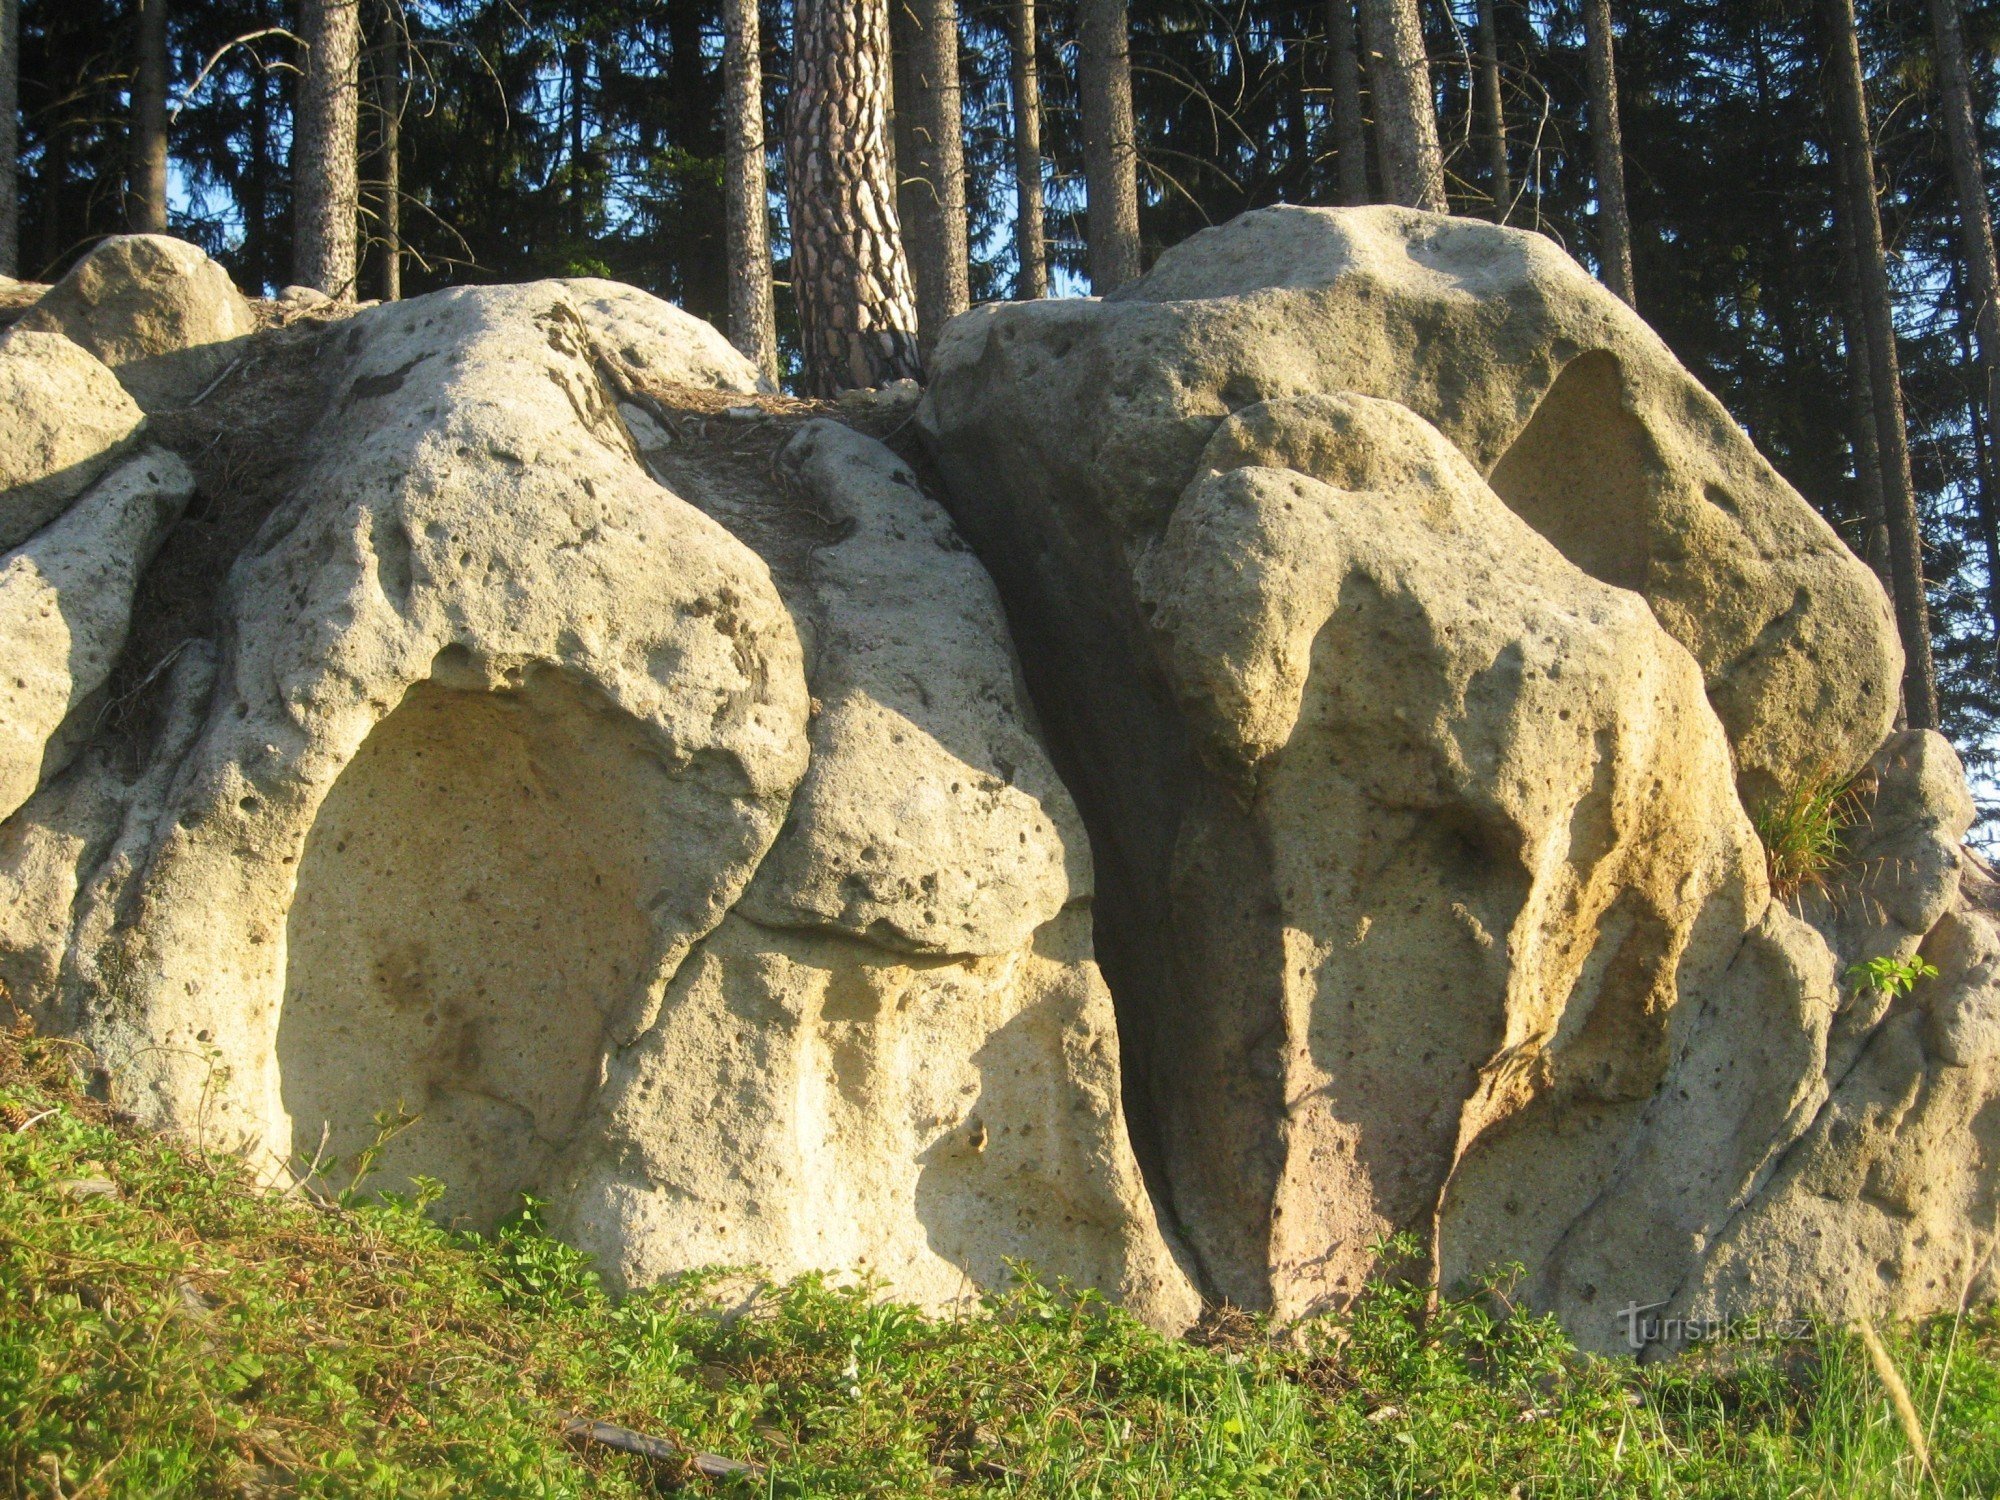 Rocks of Hostýnské vrchy - 1. Růzová - 385.5 m